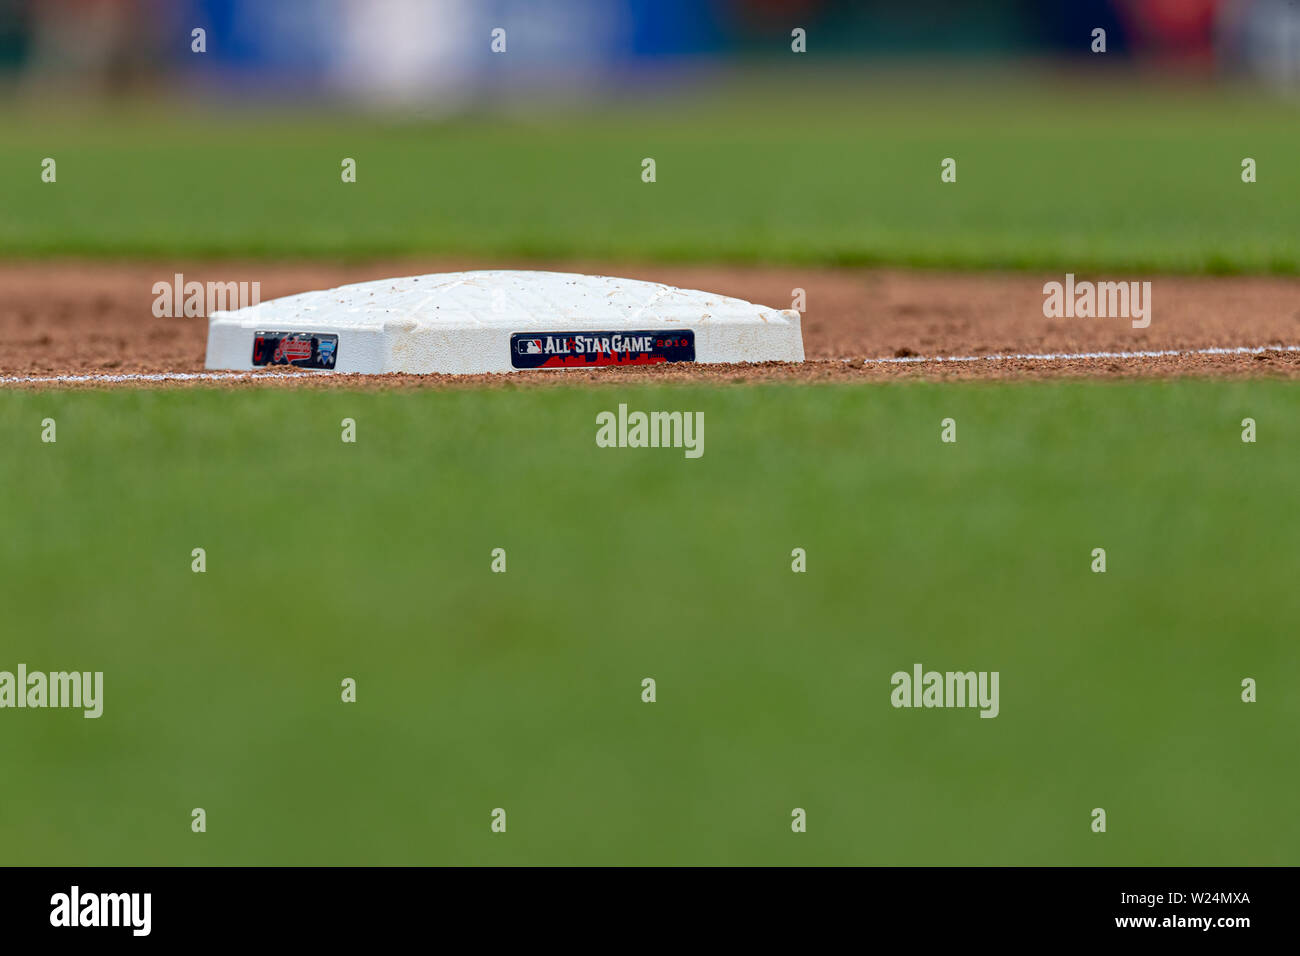 Cleveland, Ohio, USA. 16 mai, 2019. Une vue détaillée de la MLB All Star Game 2019 logo est visible sur la troisième base pendant un match entre les Orioles de Baltimore et les Indians de Cleveland le 16 mai 2019 au Progressive Field de Cleveland, OH. Adam Lacy/CSM/Alamy Live News Banque D'Images